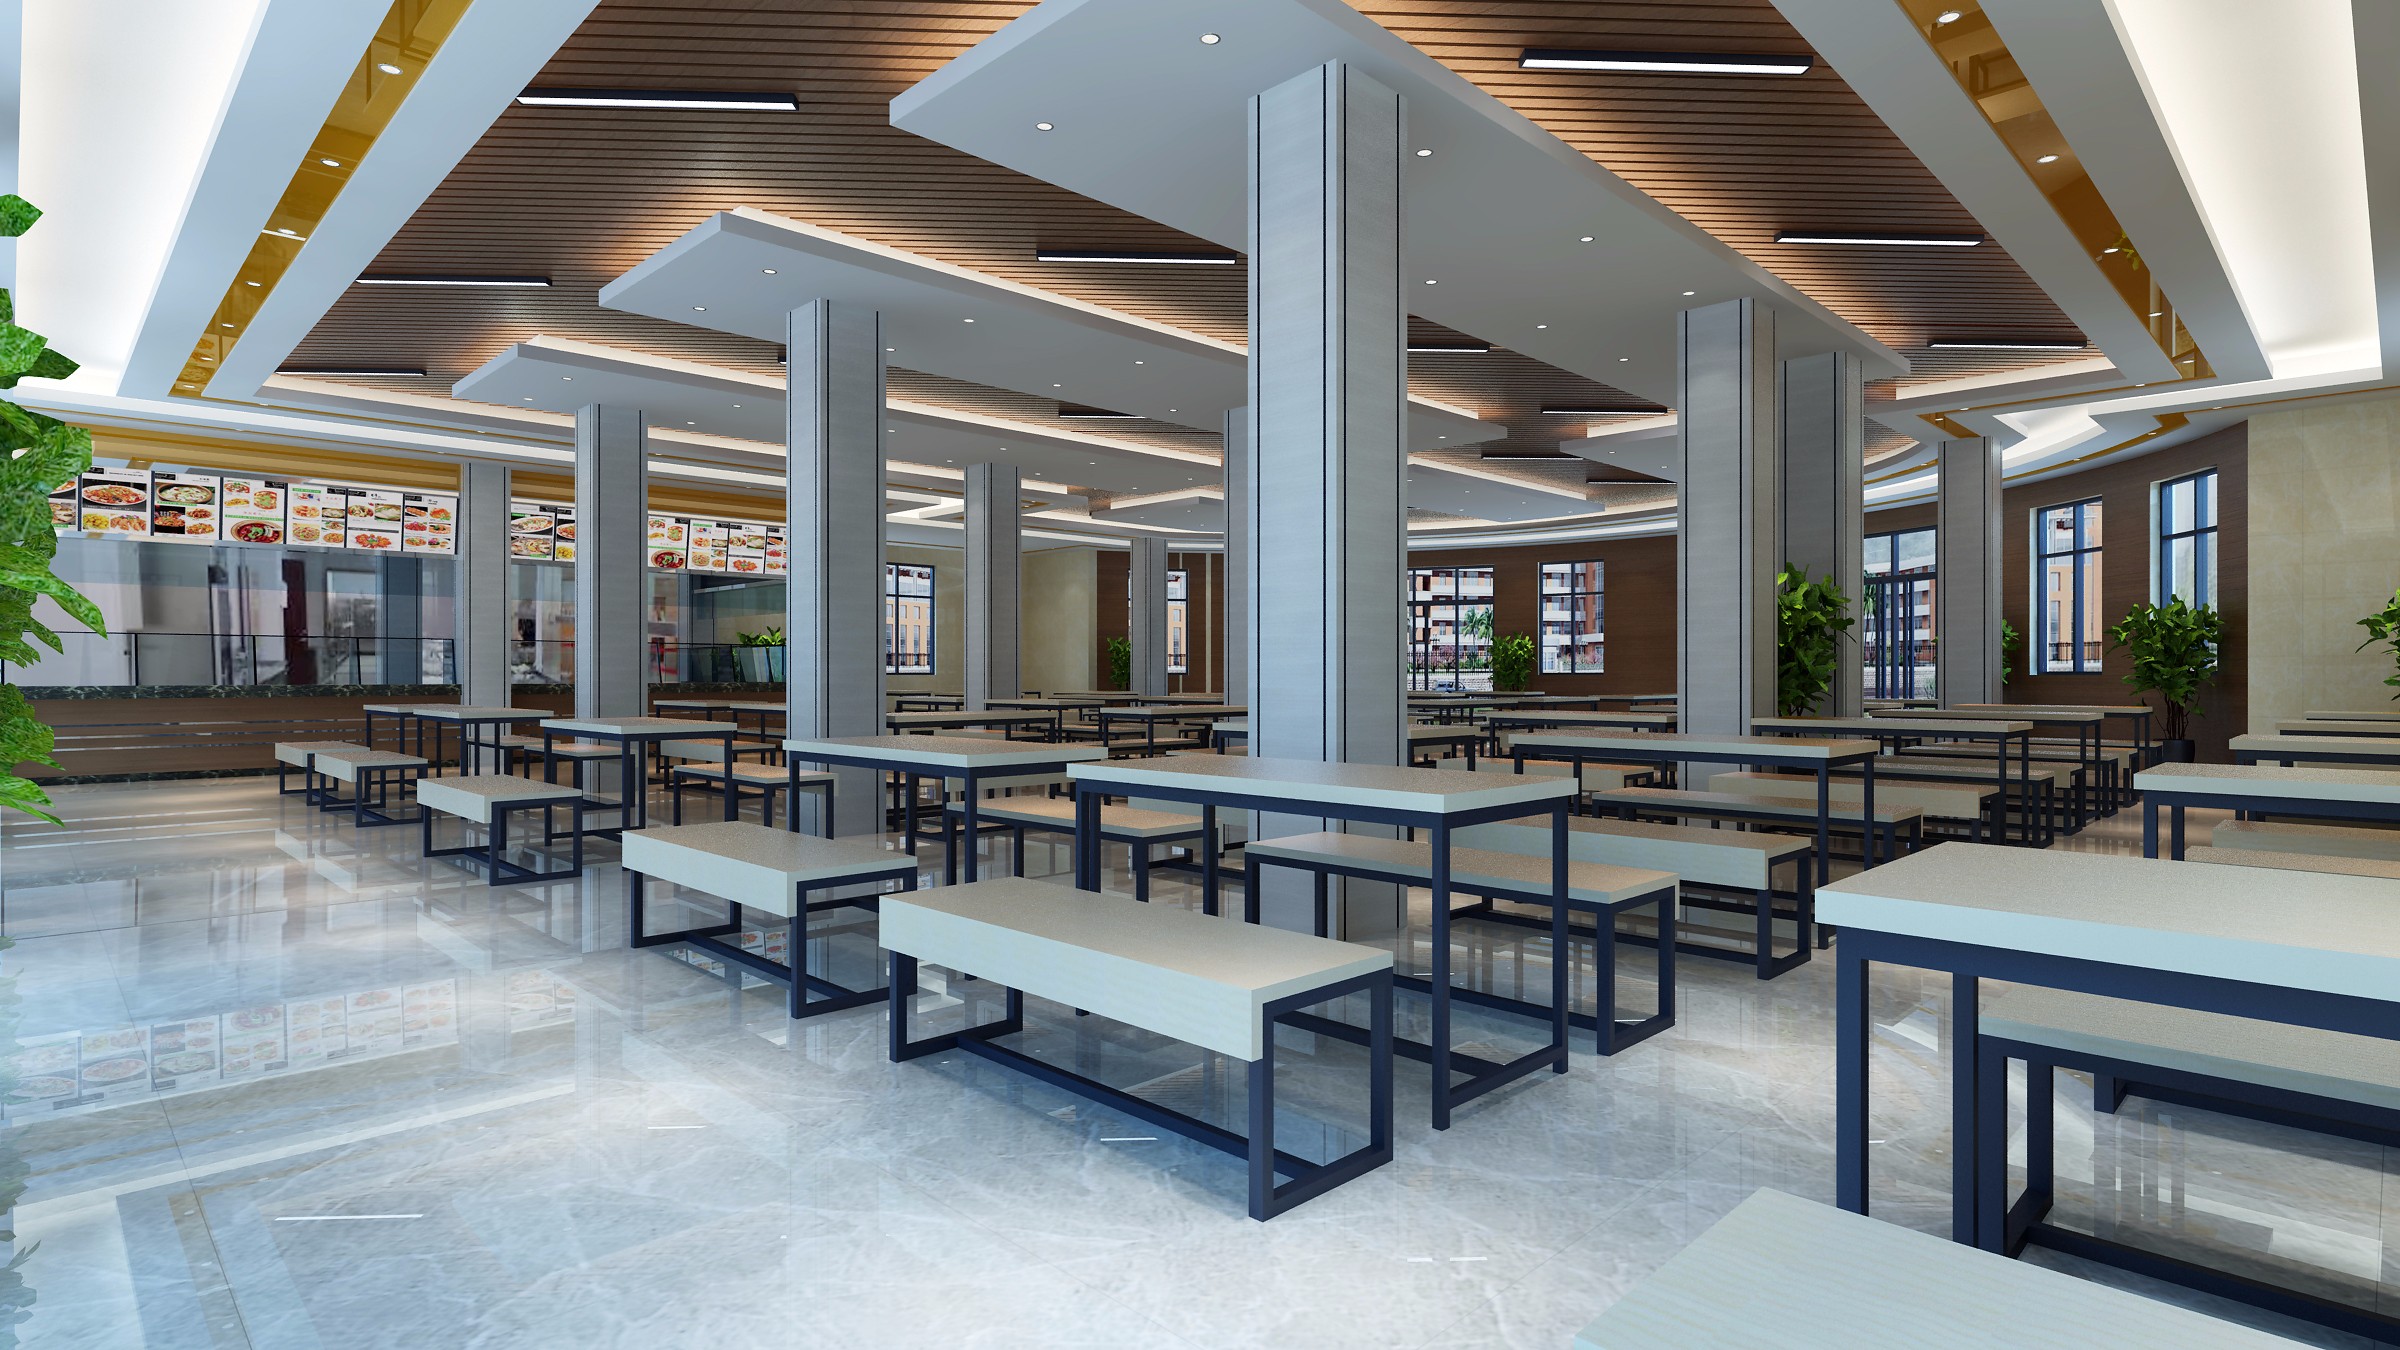 该项目是桂林电子科大 花江校区教职工食堂,一层为就餐大厅,二层餐吧